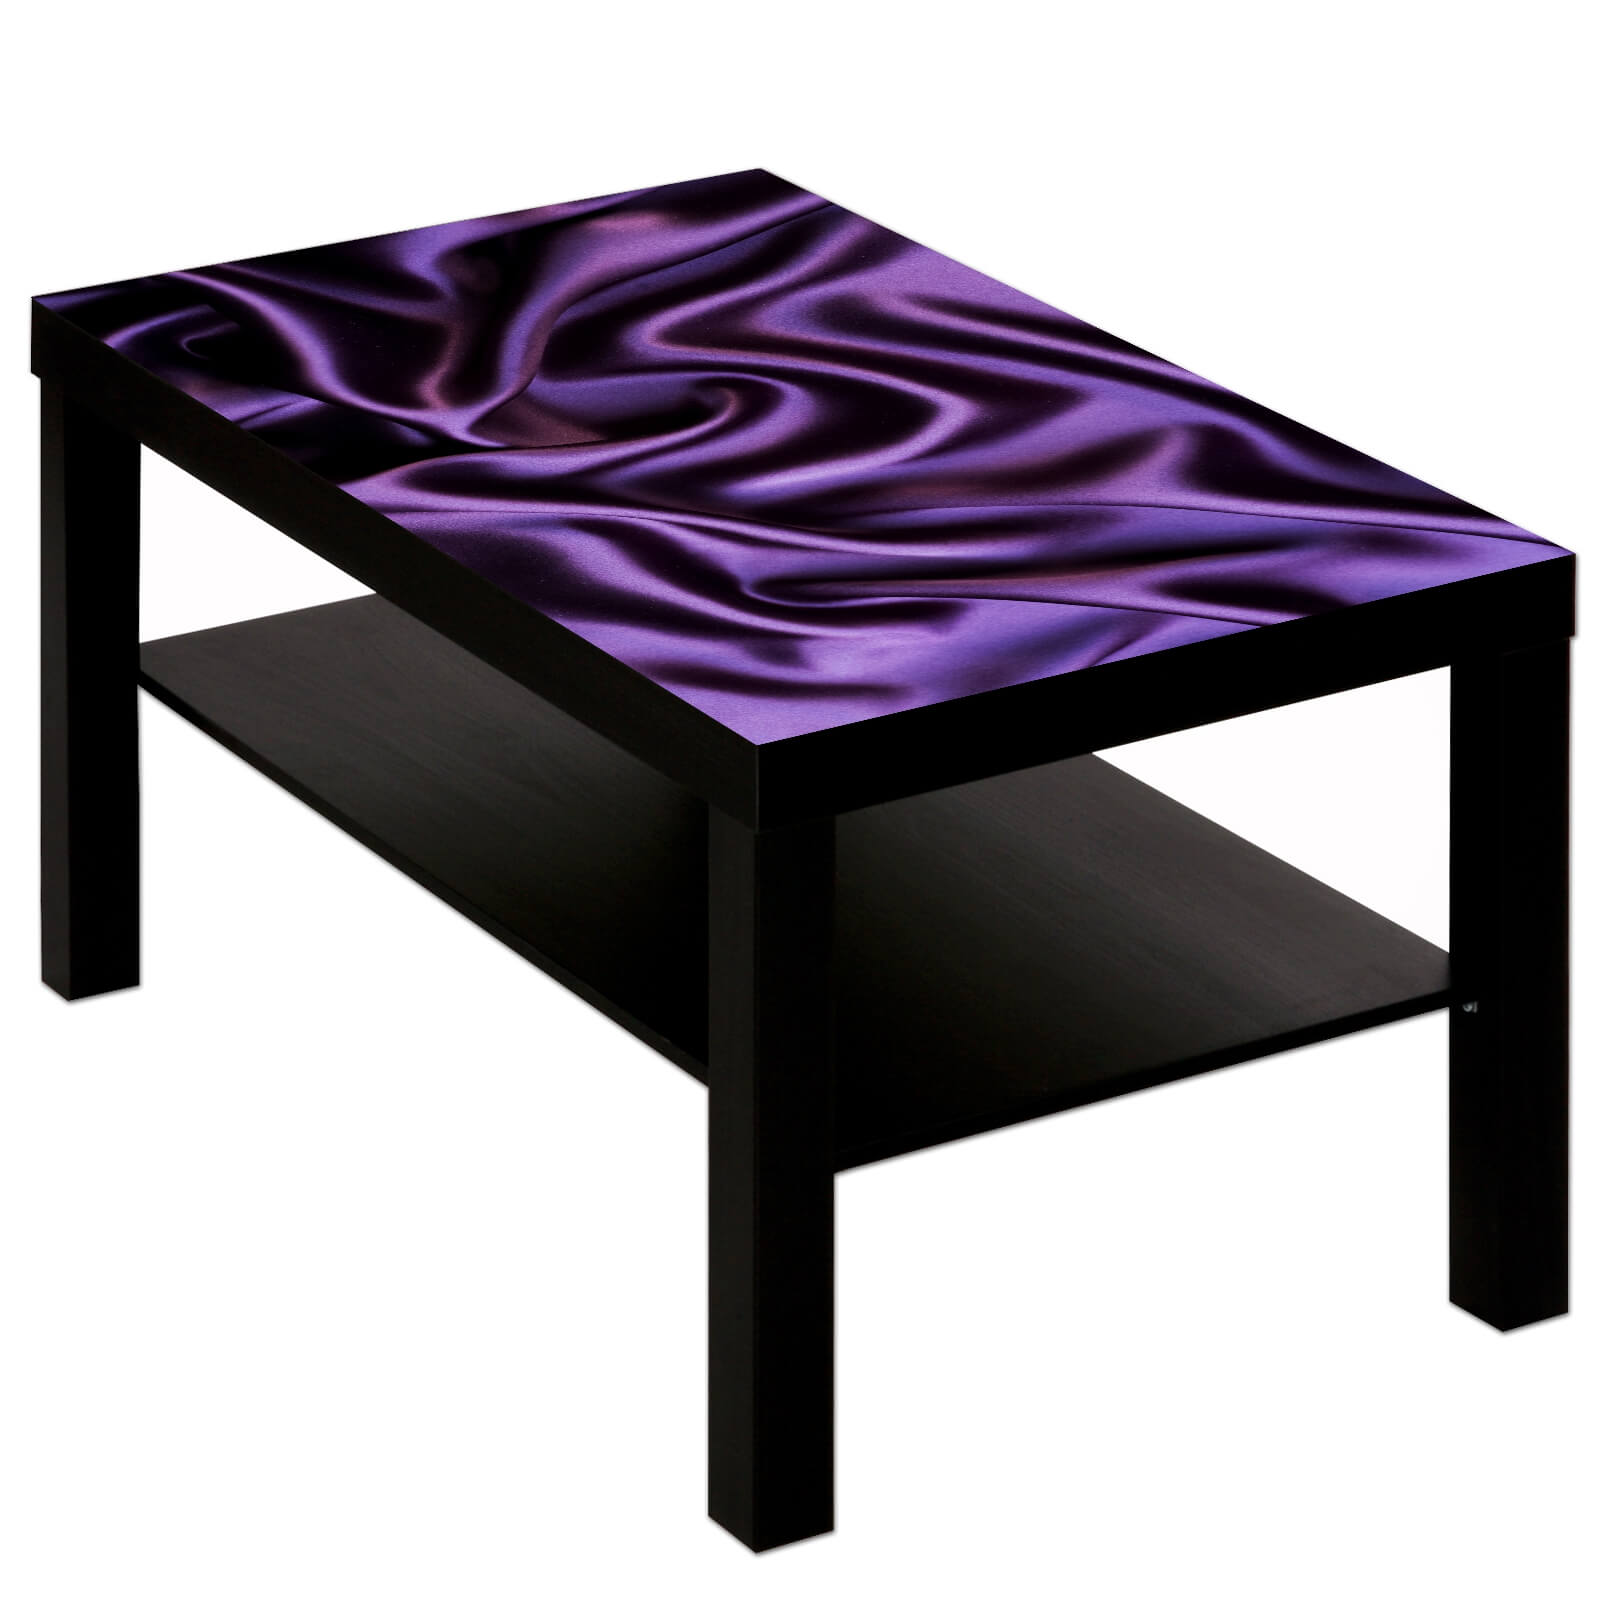 Couchtisch Tisch mit Motiv Bild Muster Seide Stoff in lila